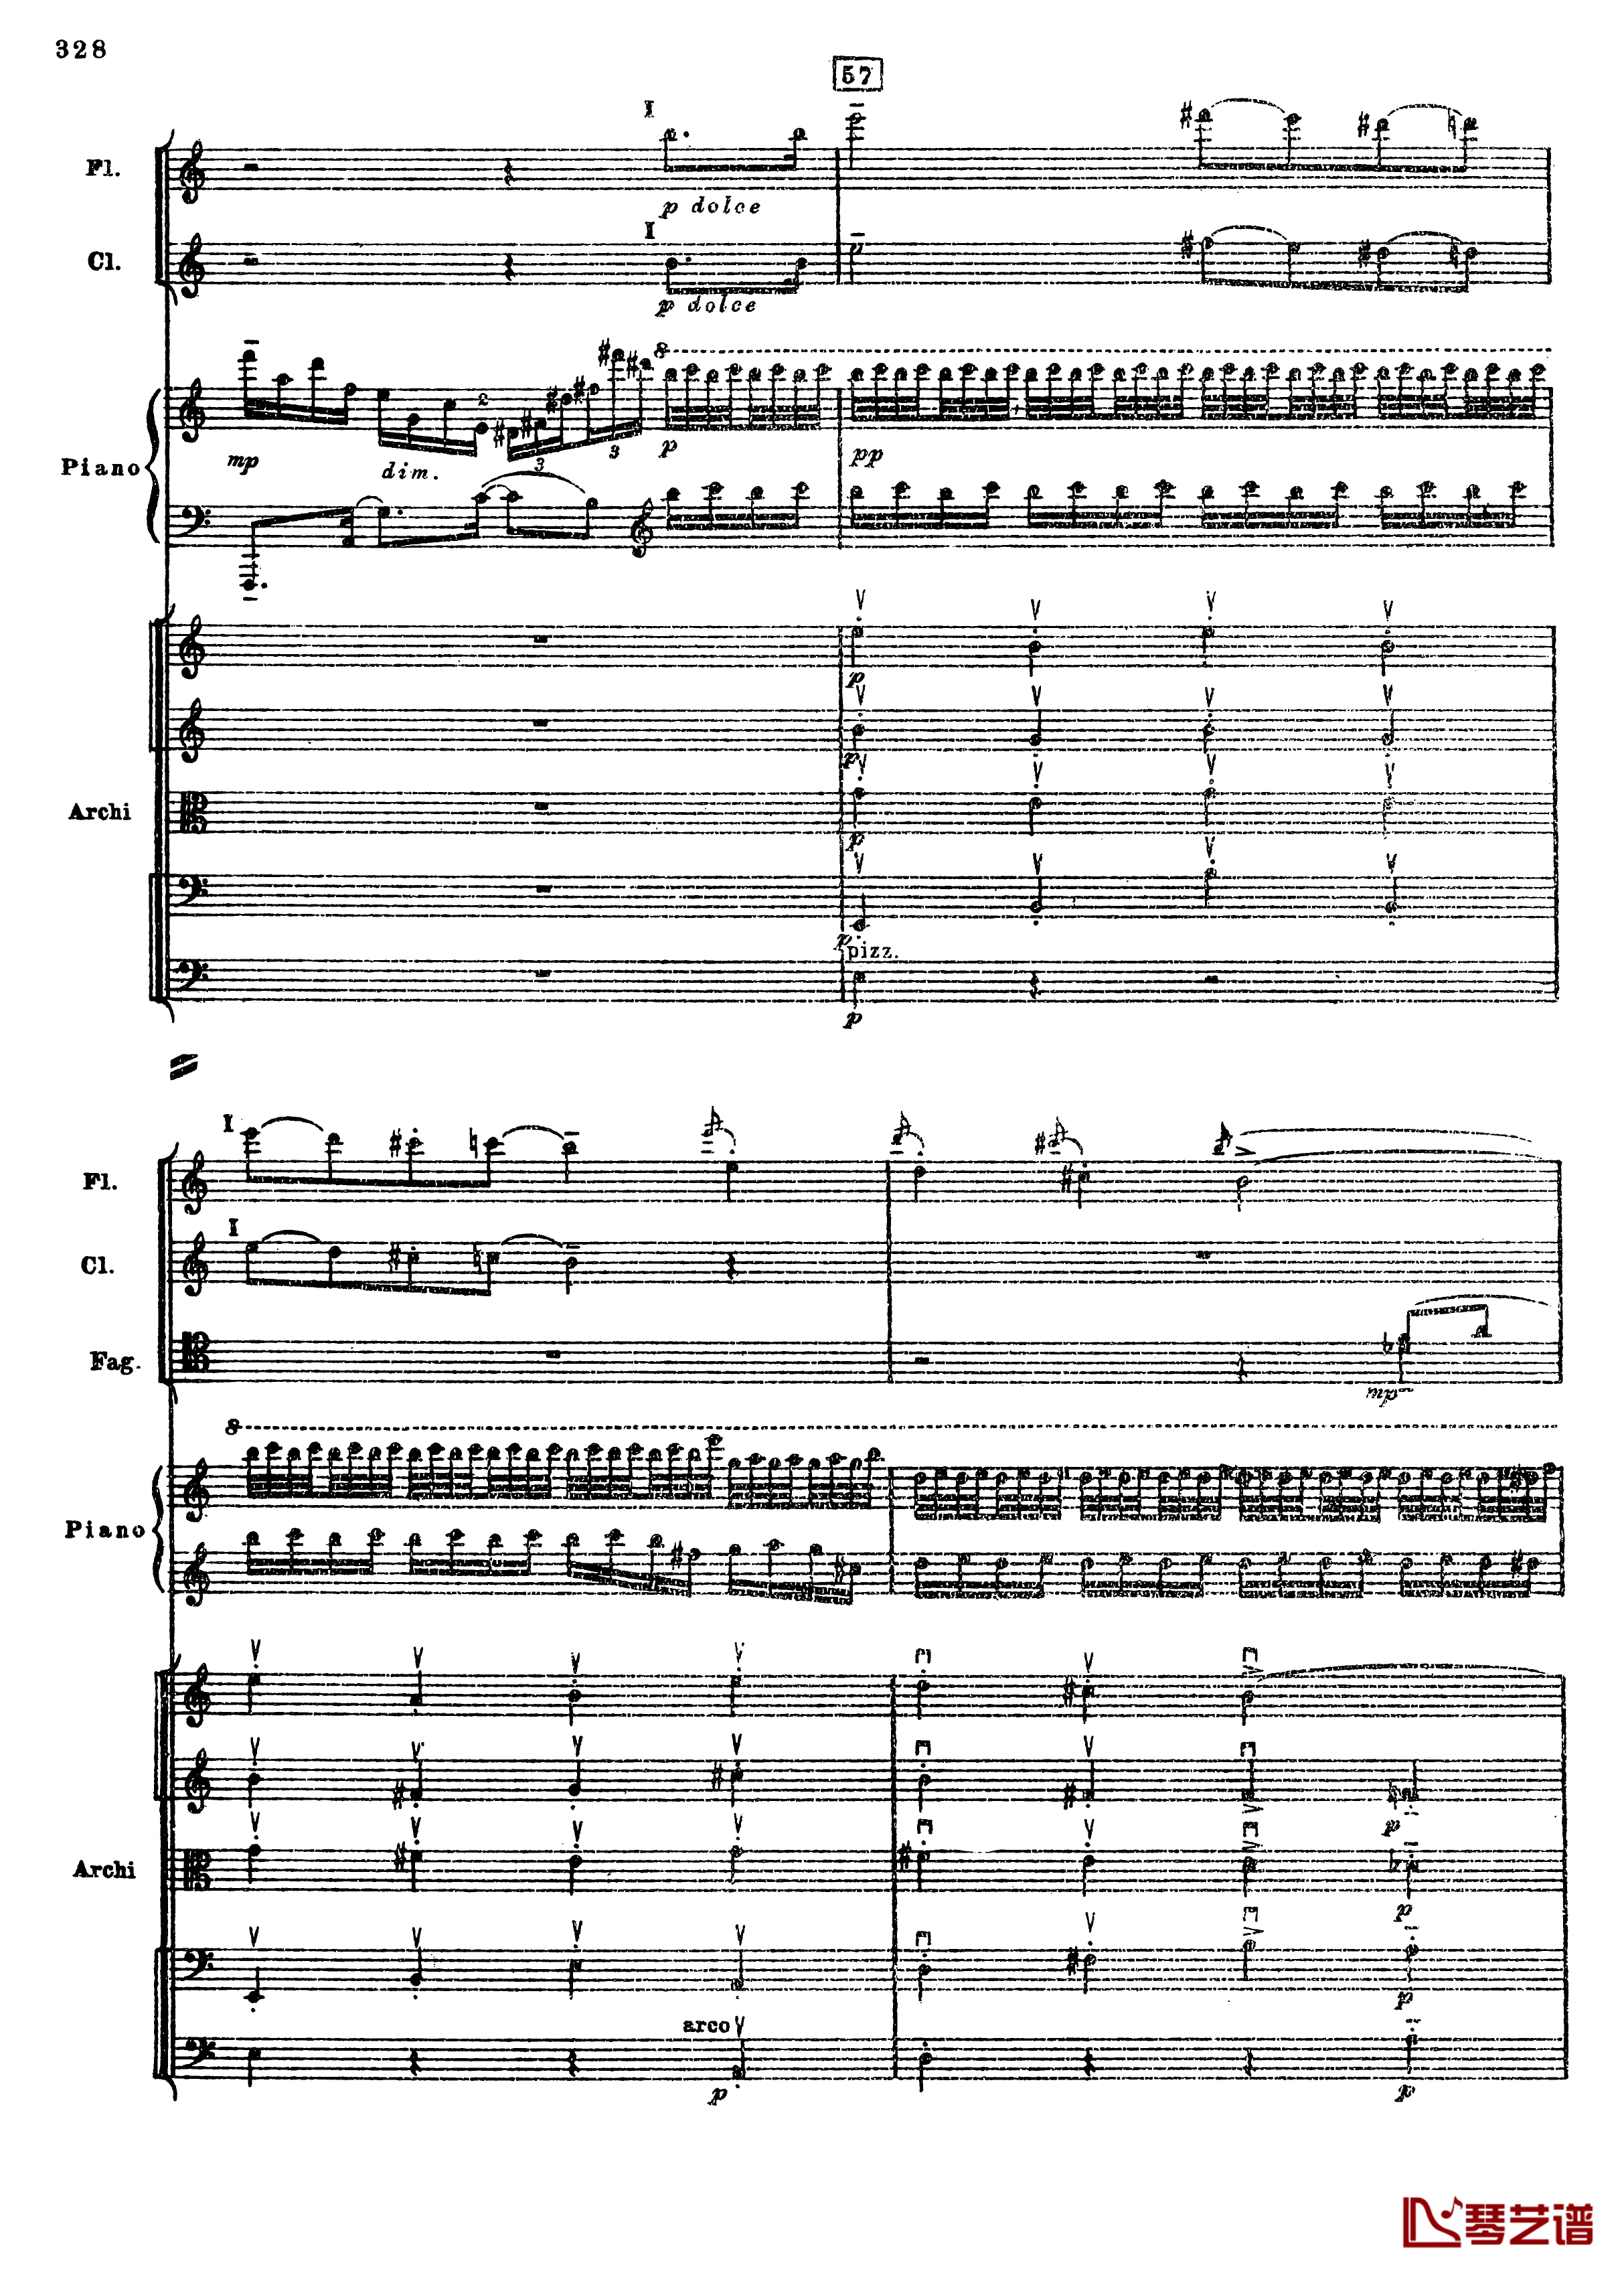 普罗科菲耶夫第三钢琴协奏曲钢琴谱-总谱-普罗科非耶夫60